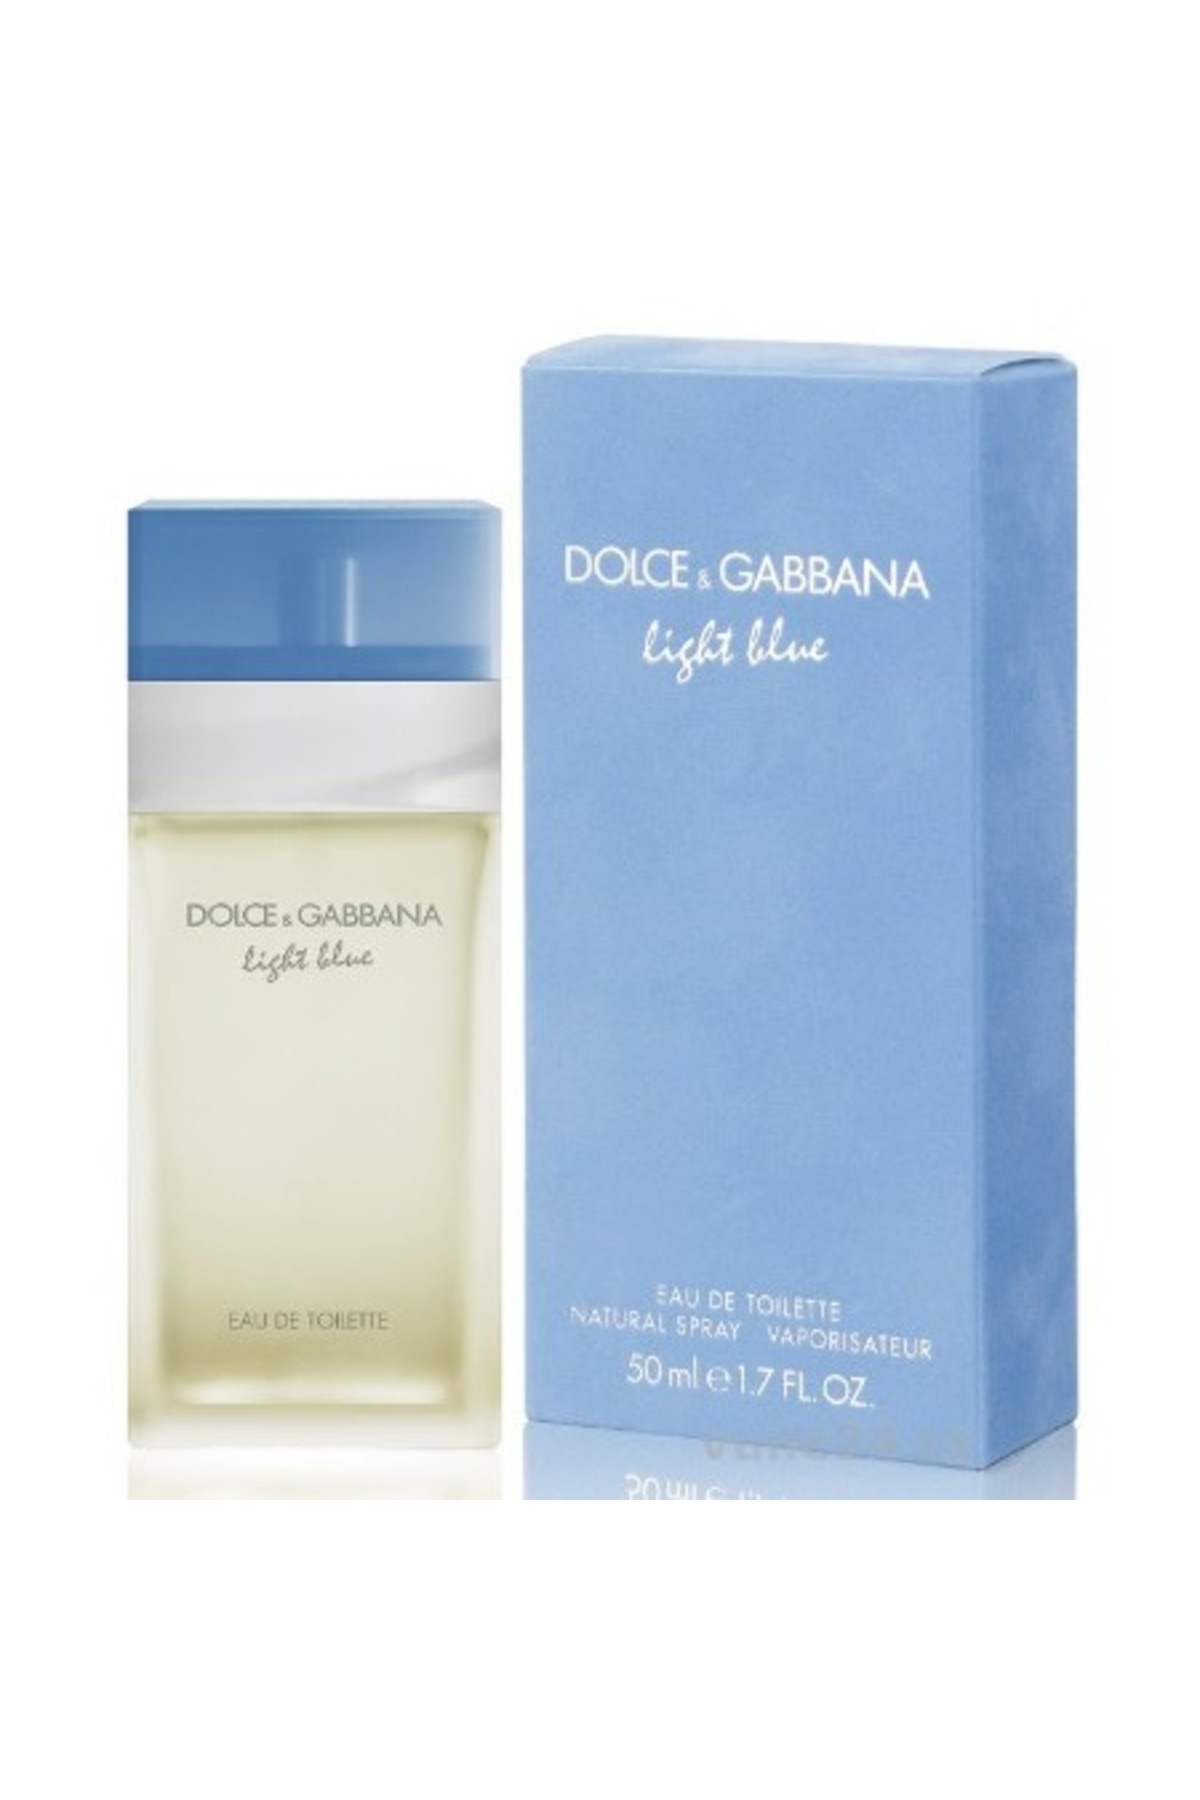 dolce and gabbana light blue italian love